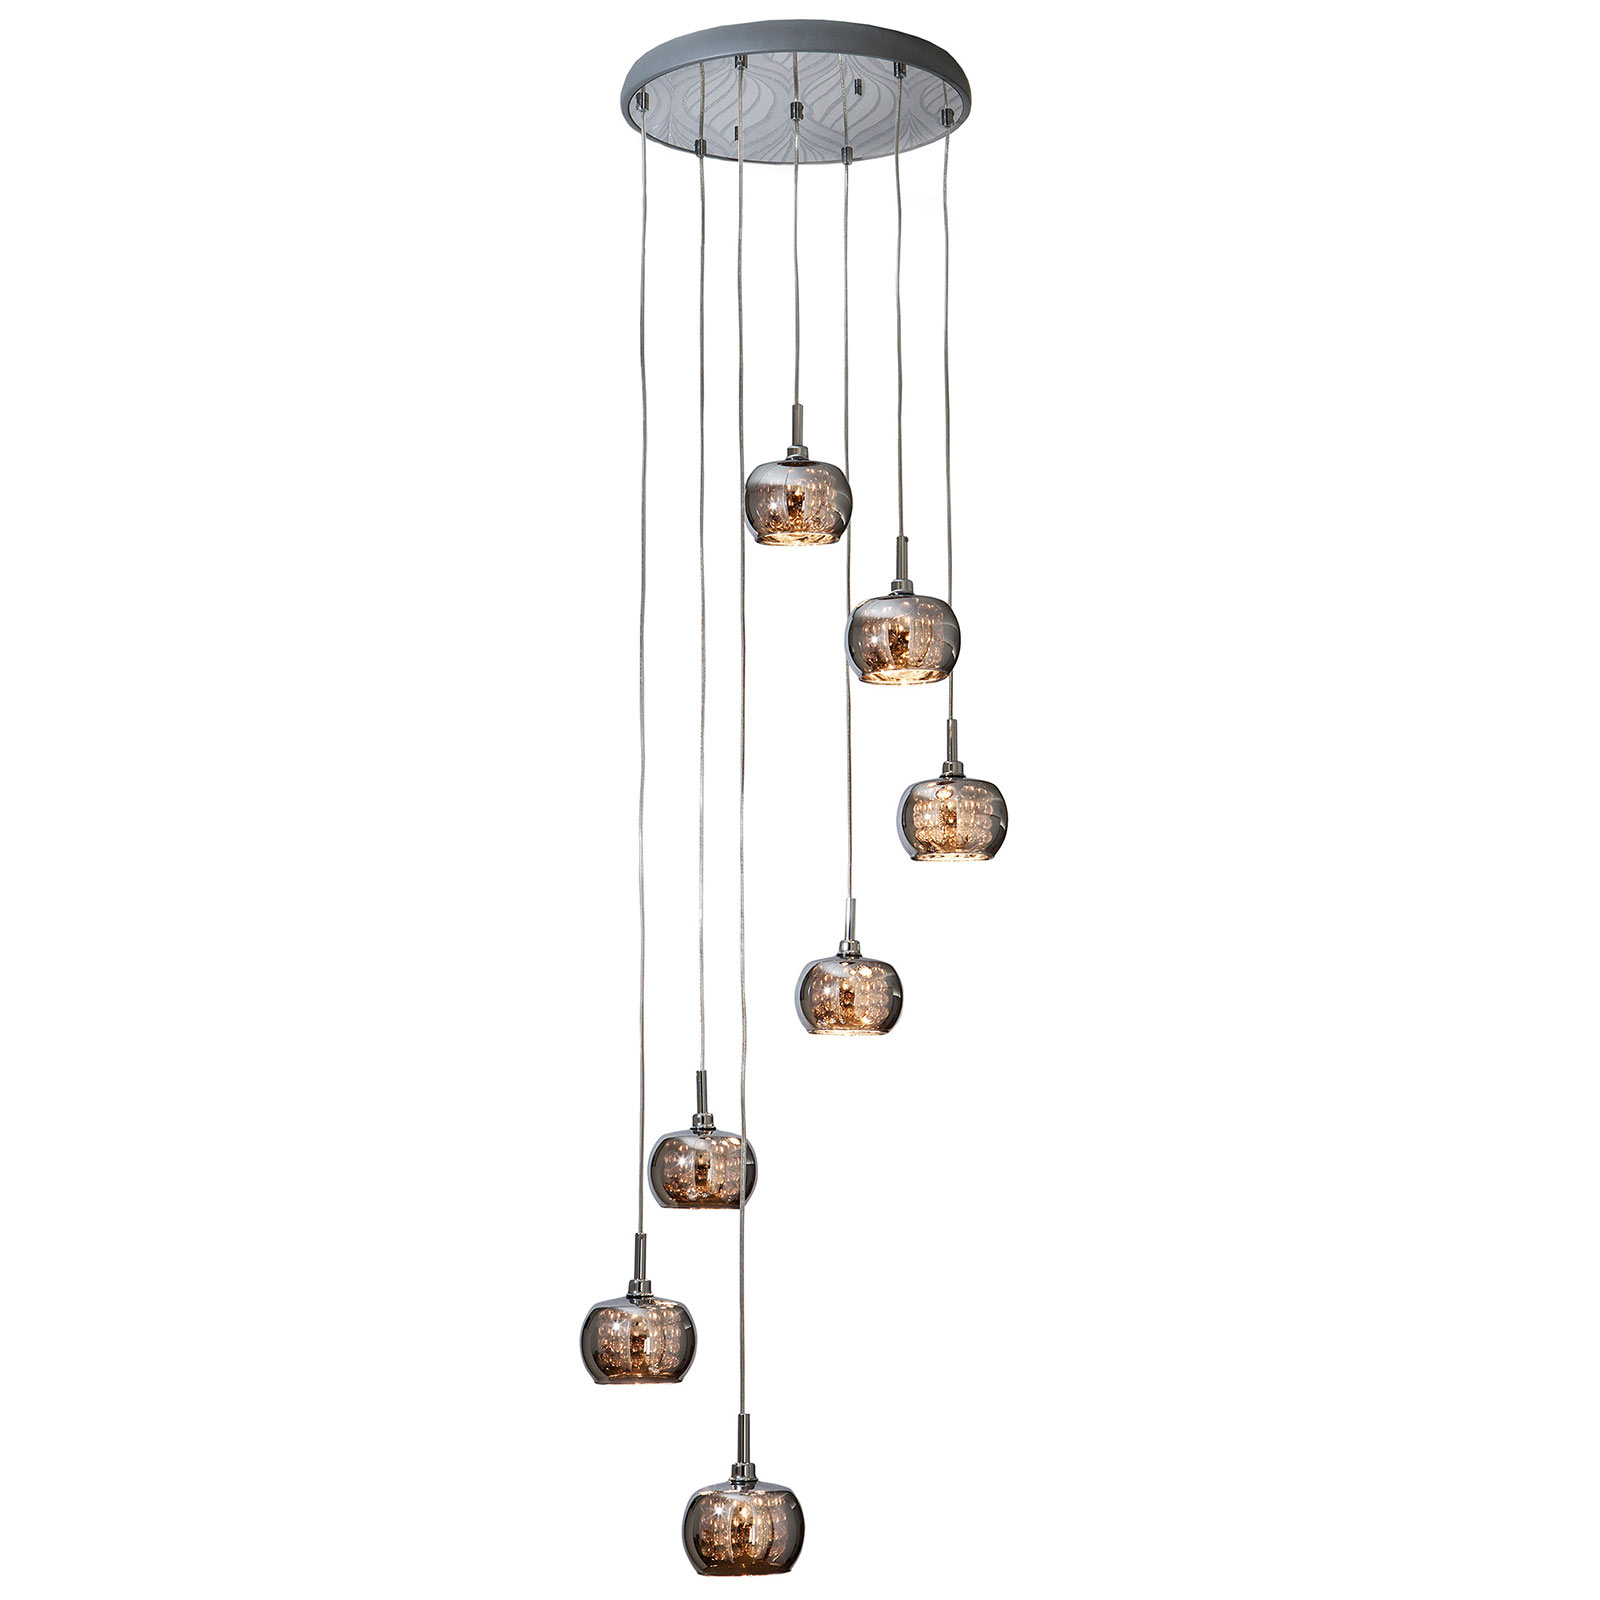 Arian hanglamp met kristallen, 7-lamps